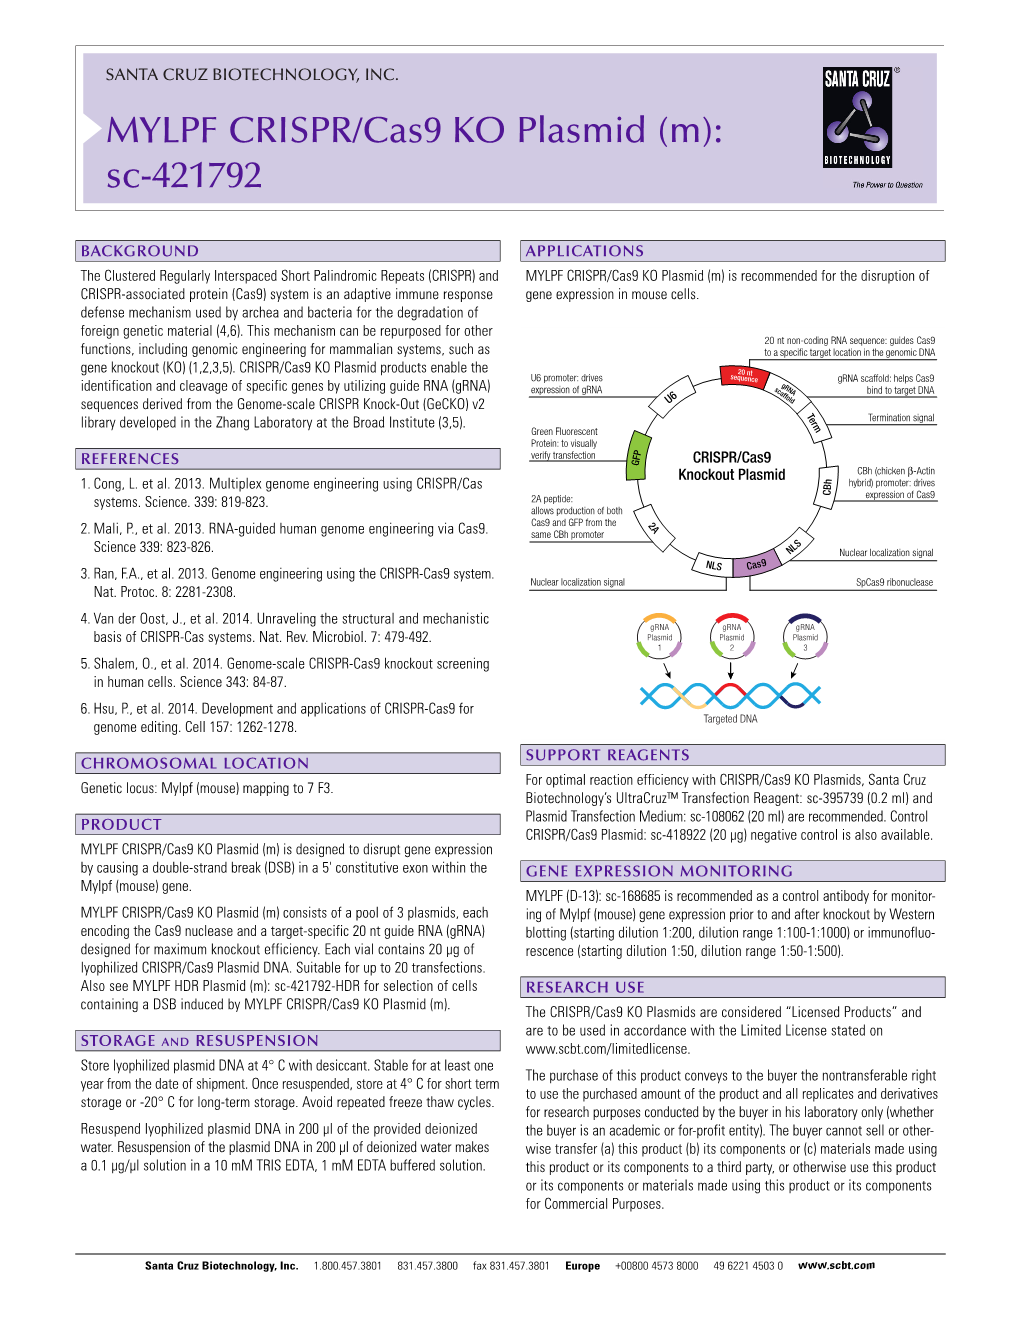 MYLPF CRISPR/Cas9 KO Plasmid (M): Sc-421792